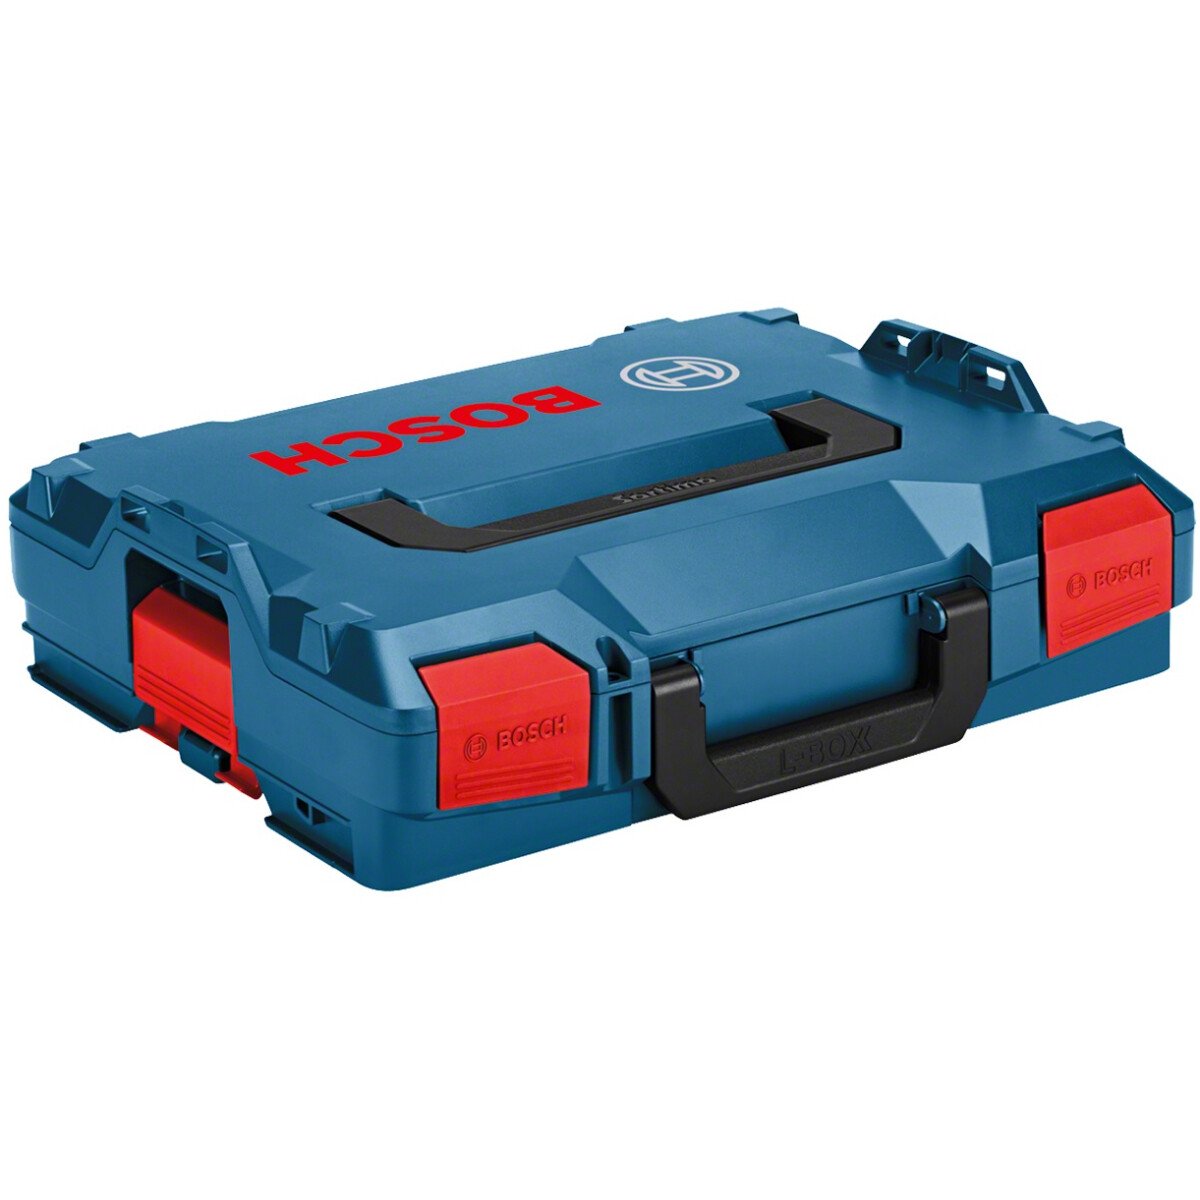 Bosch 1600A012FZ LBoxx 102 Carry Case